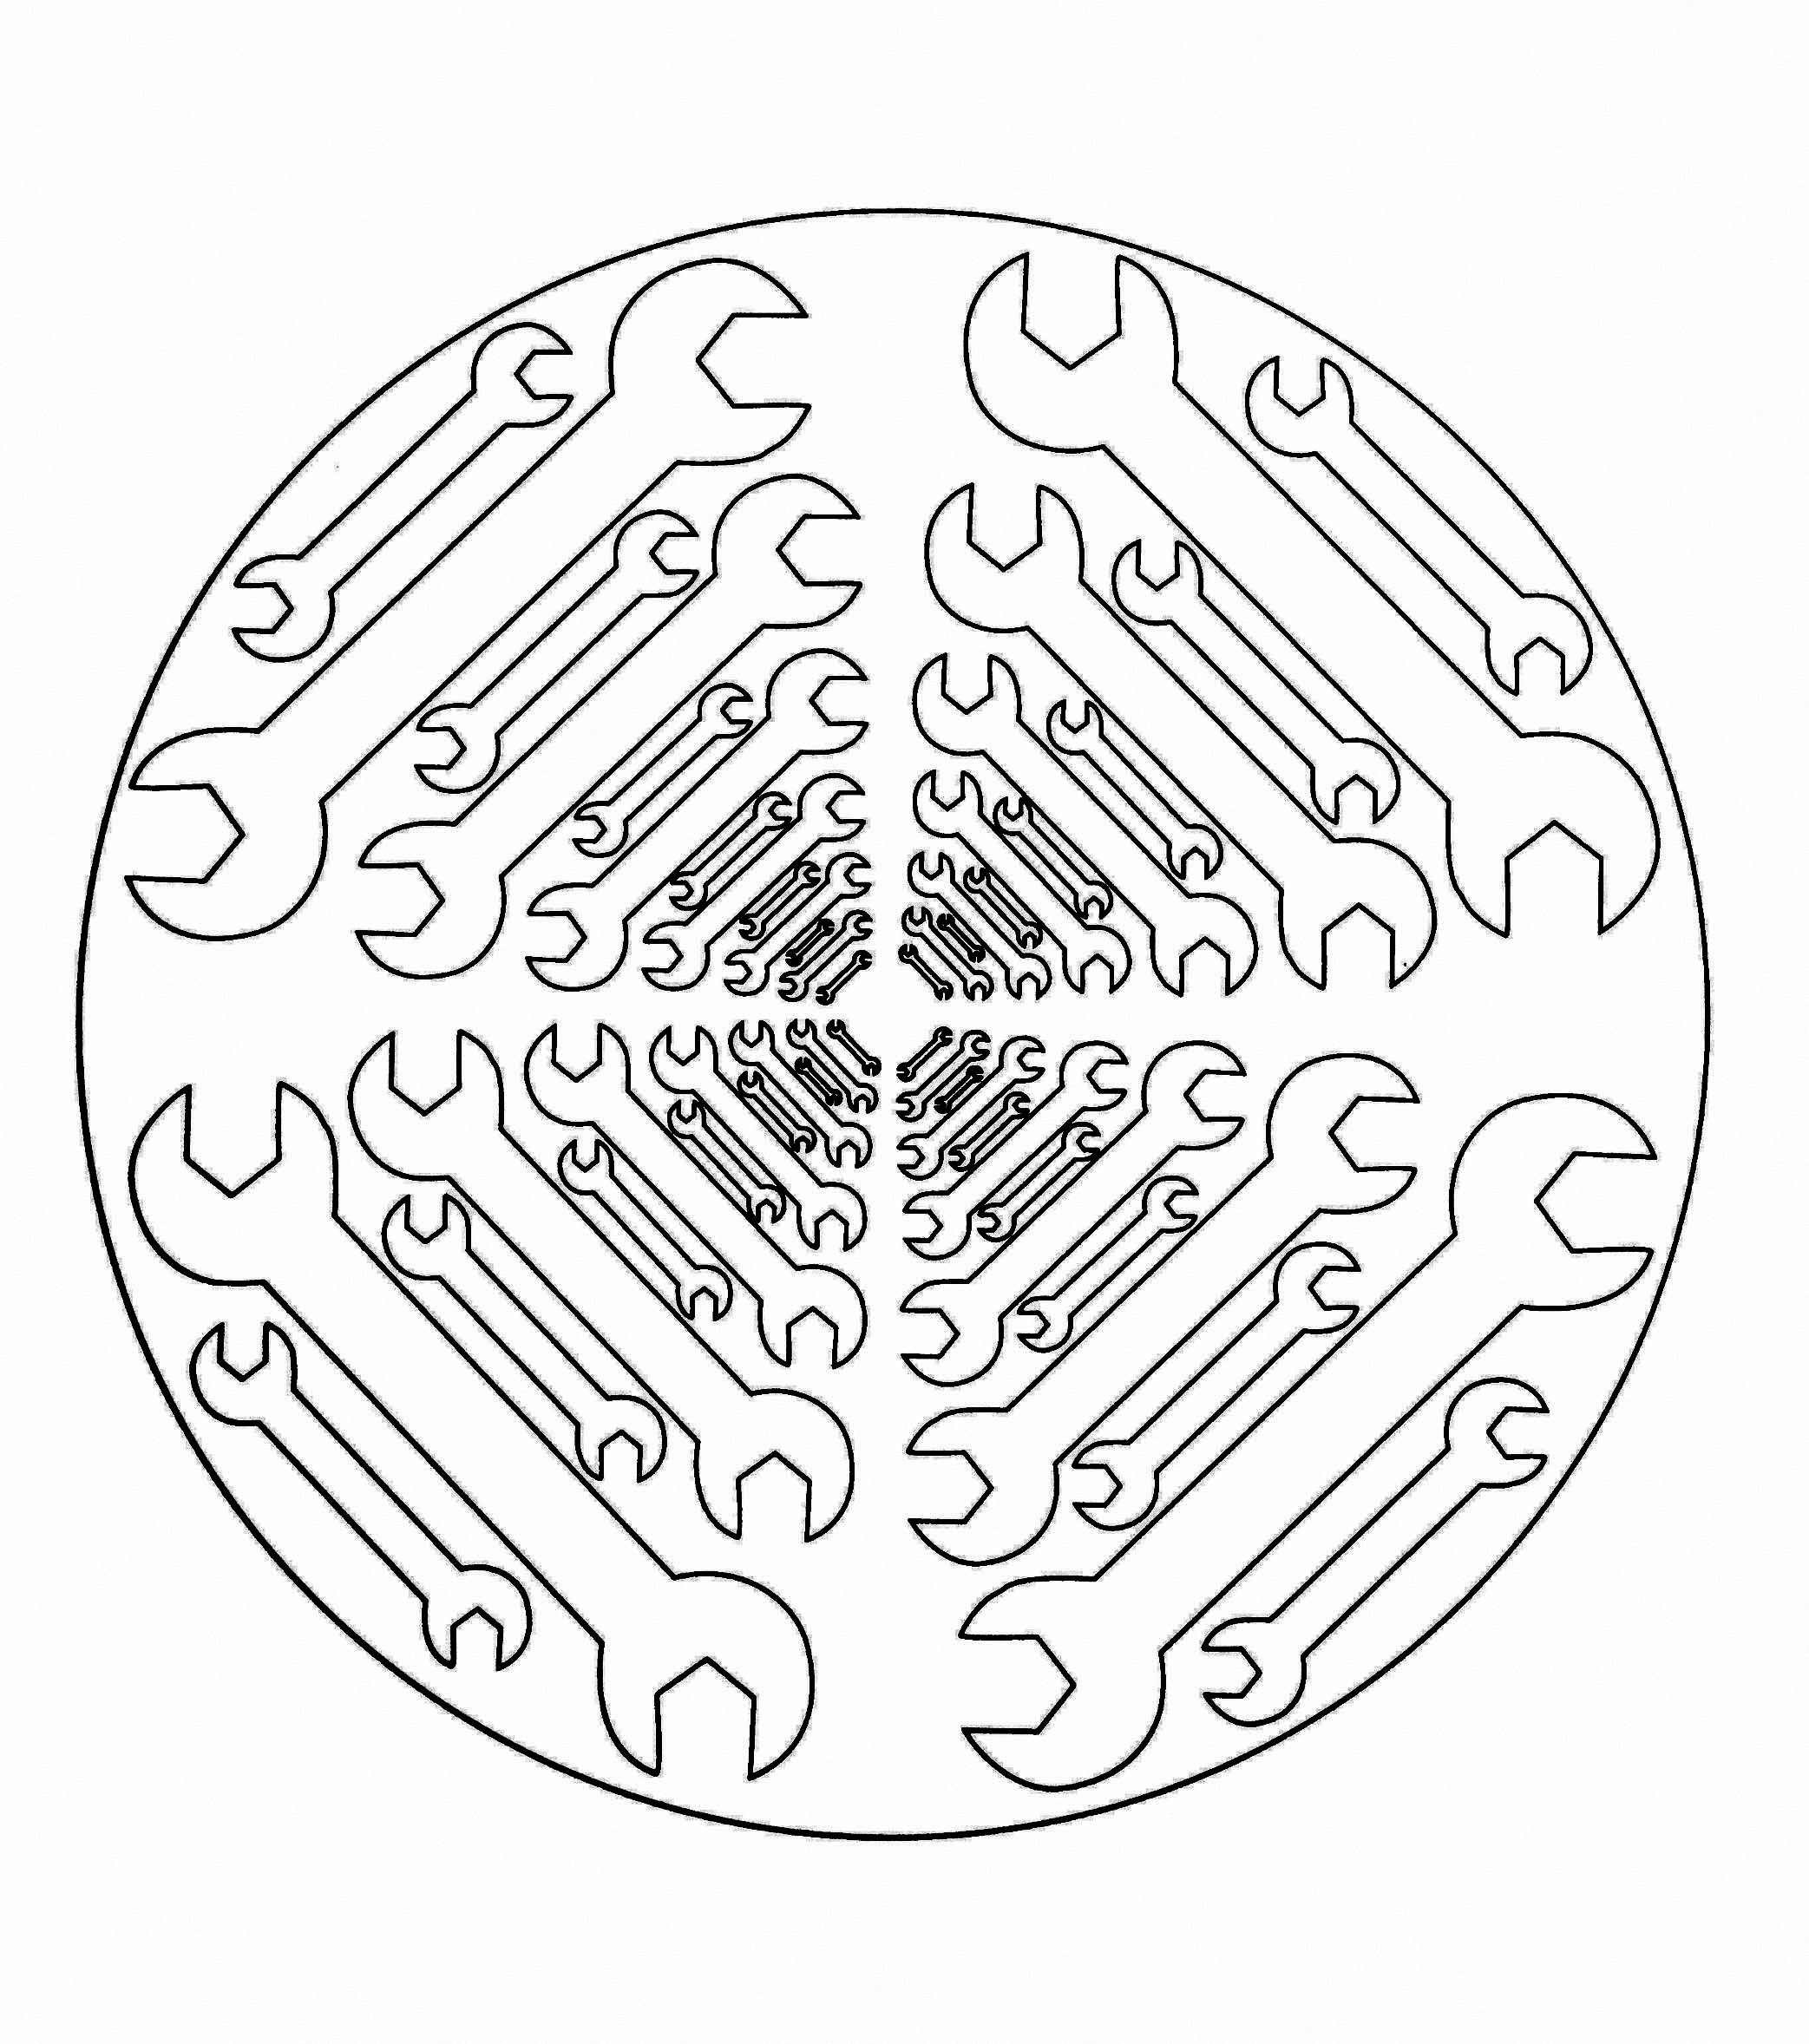 Wunderschönes Mandala zum Ausdrucken, auf dem mehrere Schraubenschlüssel abgebildet sind.